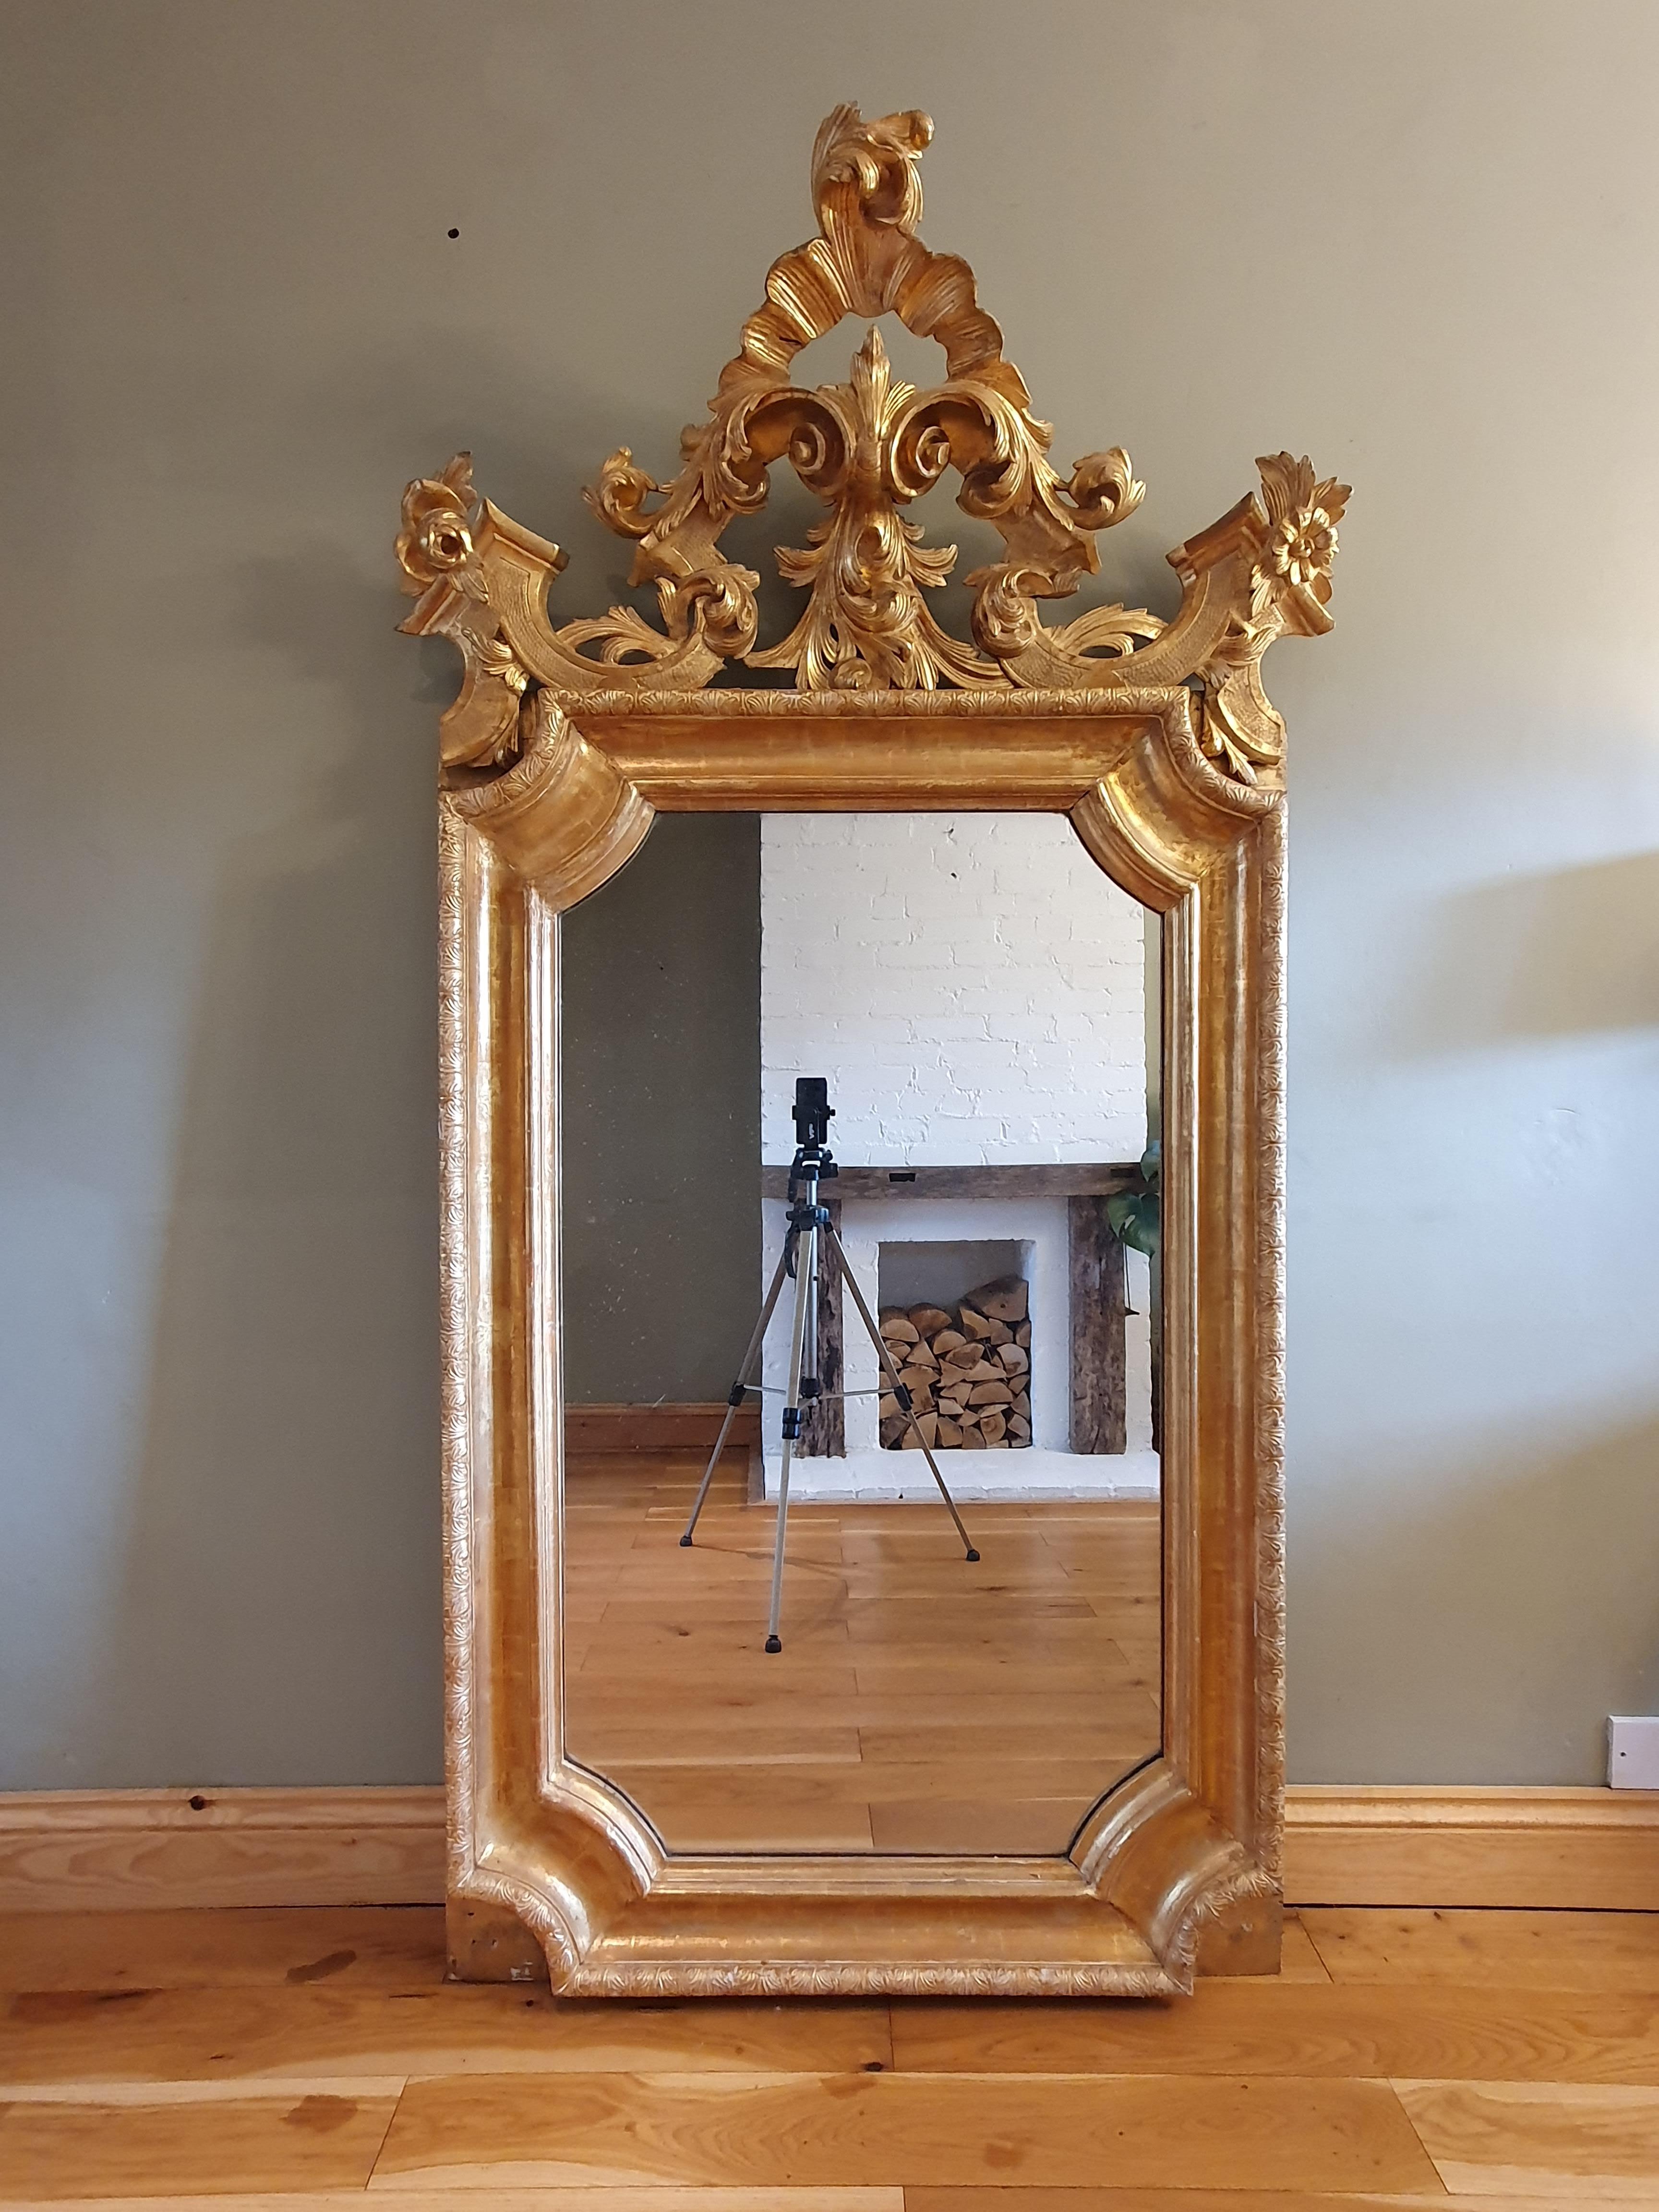 Miroir mural en bois doré, très impressionnant, datant du milieu du 19e siècle, avec des motifs en gesso tout autour du cadre principal (typique des miroirs du 18e siècle), et un beau plateau en bois sculpté. Plaque de miroir au mercure d'origine,